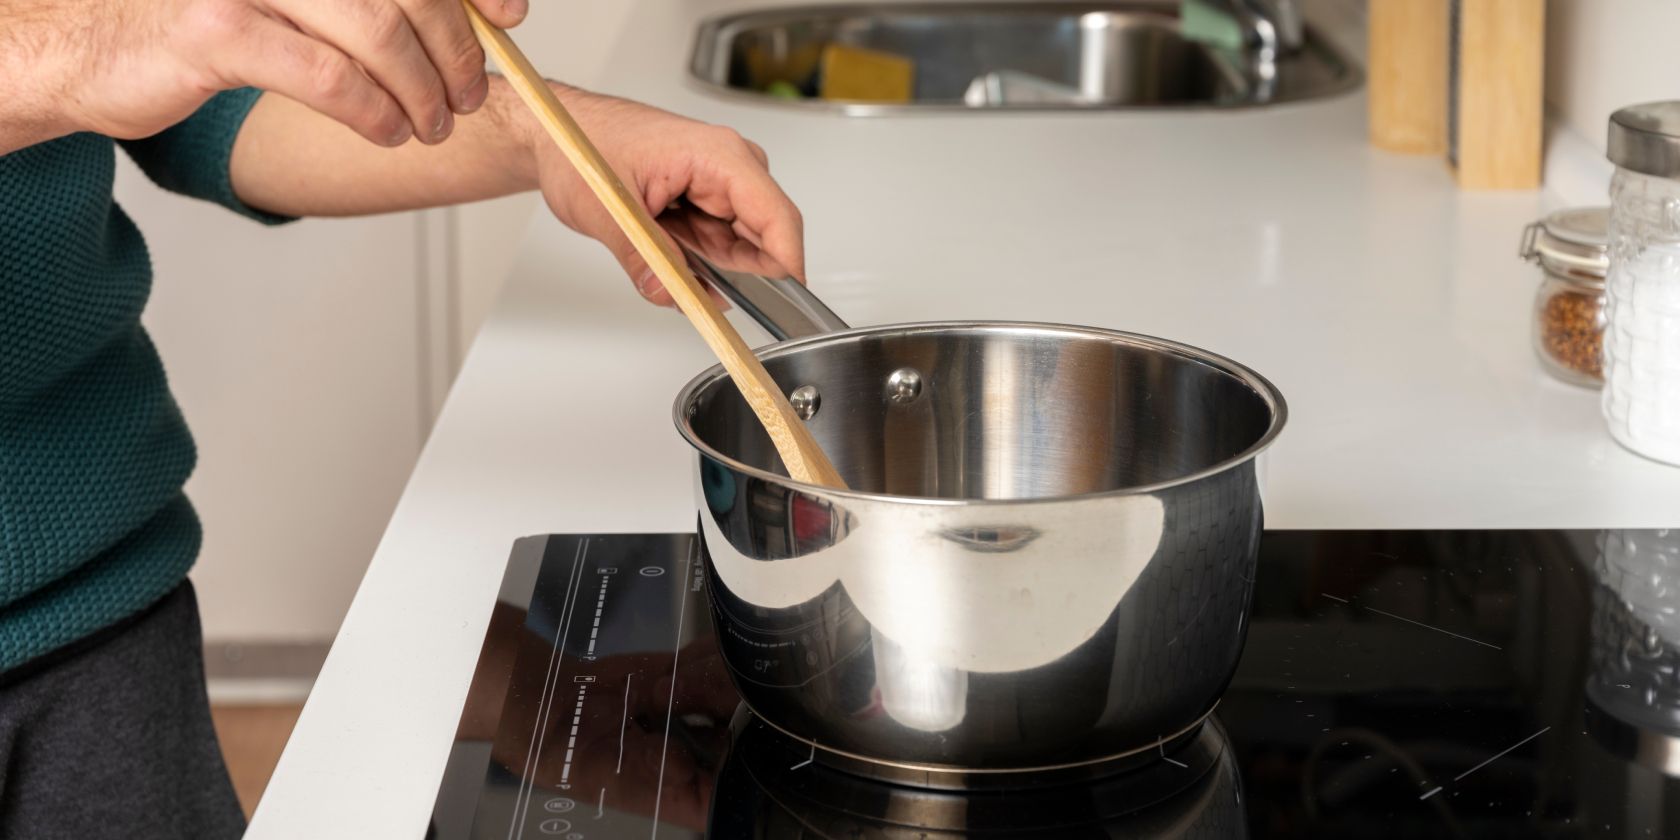 5 Best Automatic Pot Stirrer 